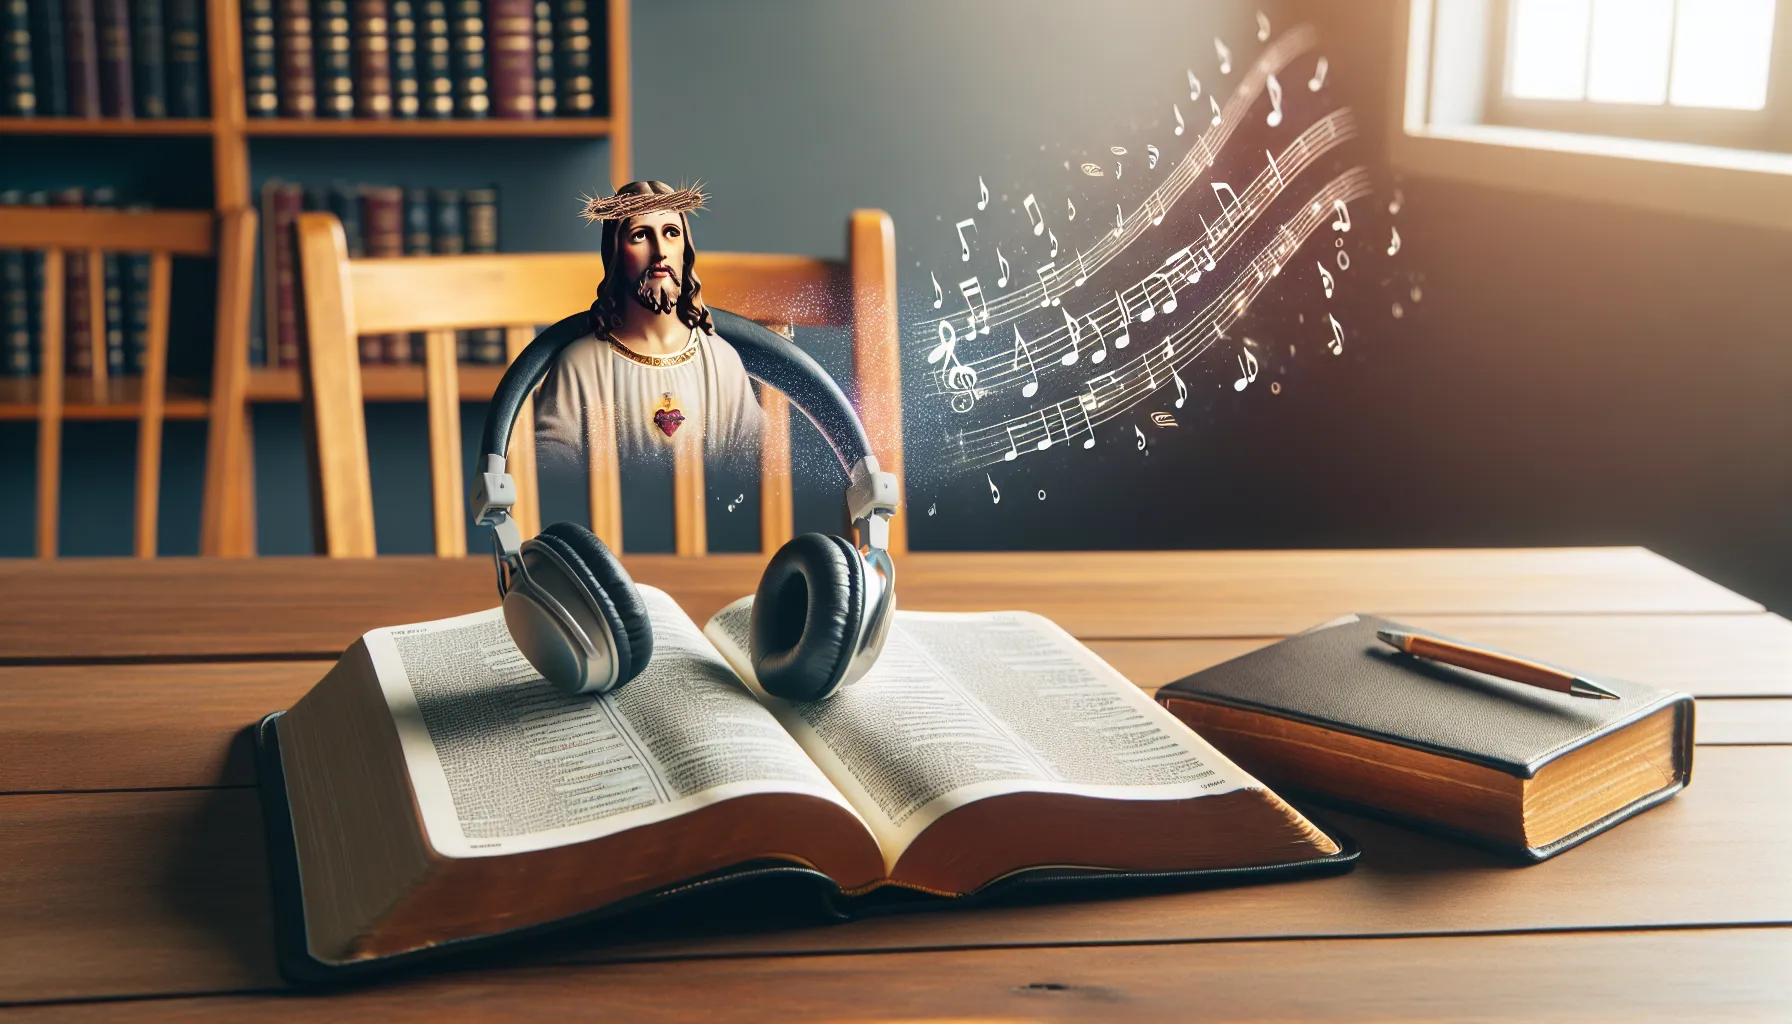 Imagen destacada de un artículo web que discute si los cristianos pueden escuchar música secular según las enseñanzas de la Biblia.